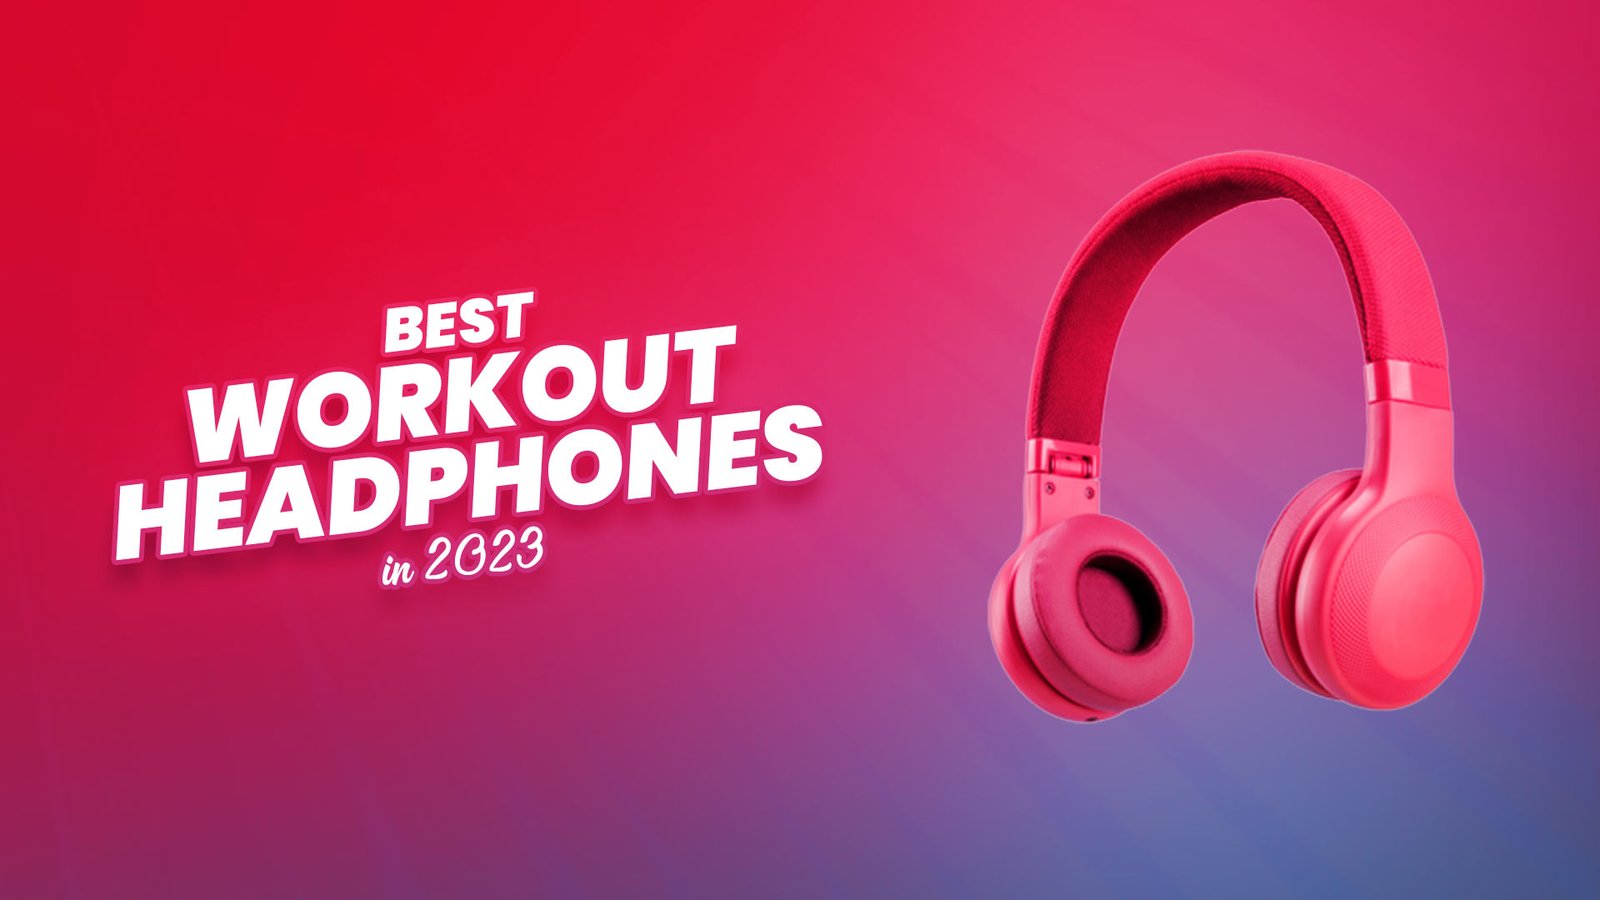 Best Workout Headphones in 2023